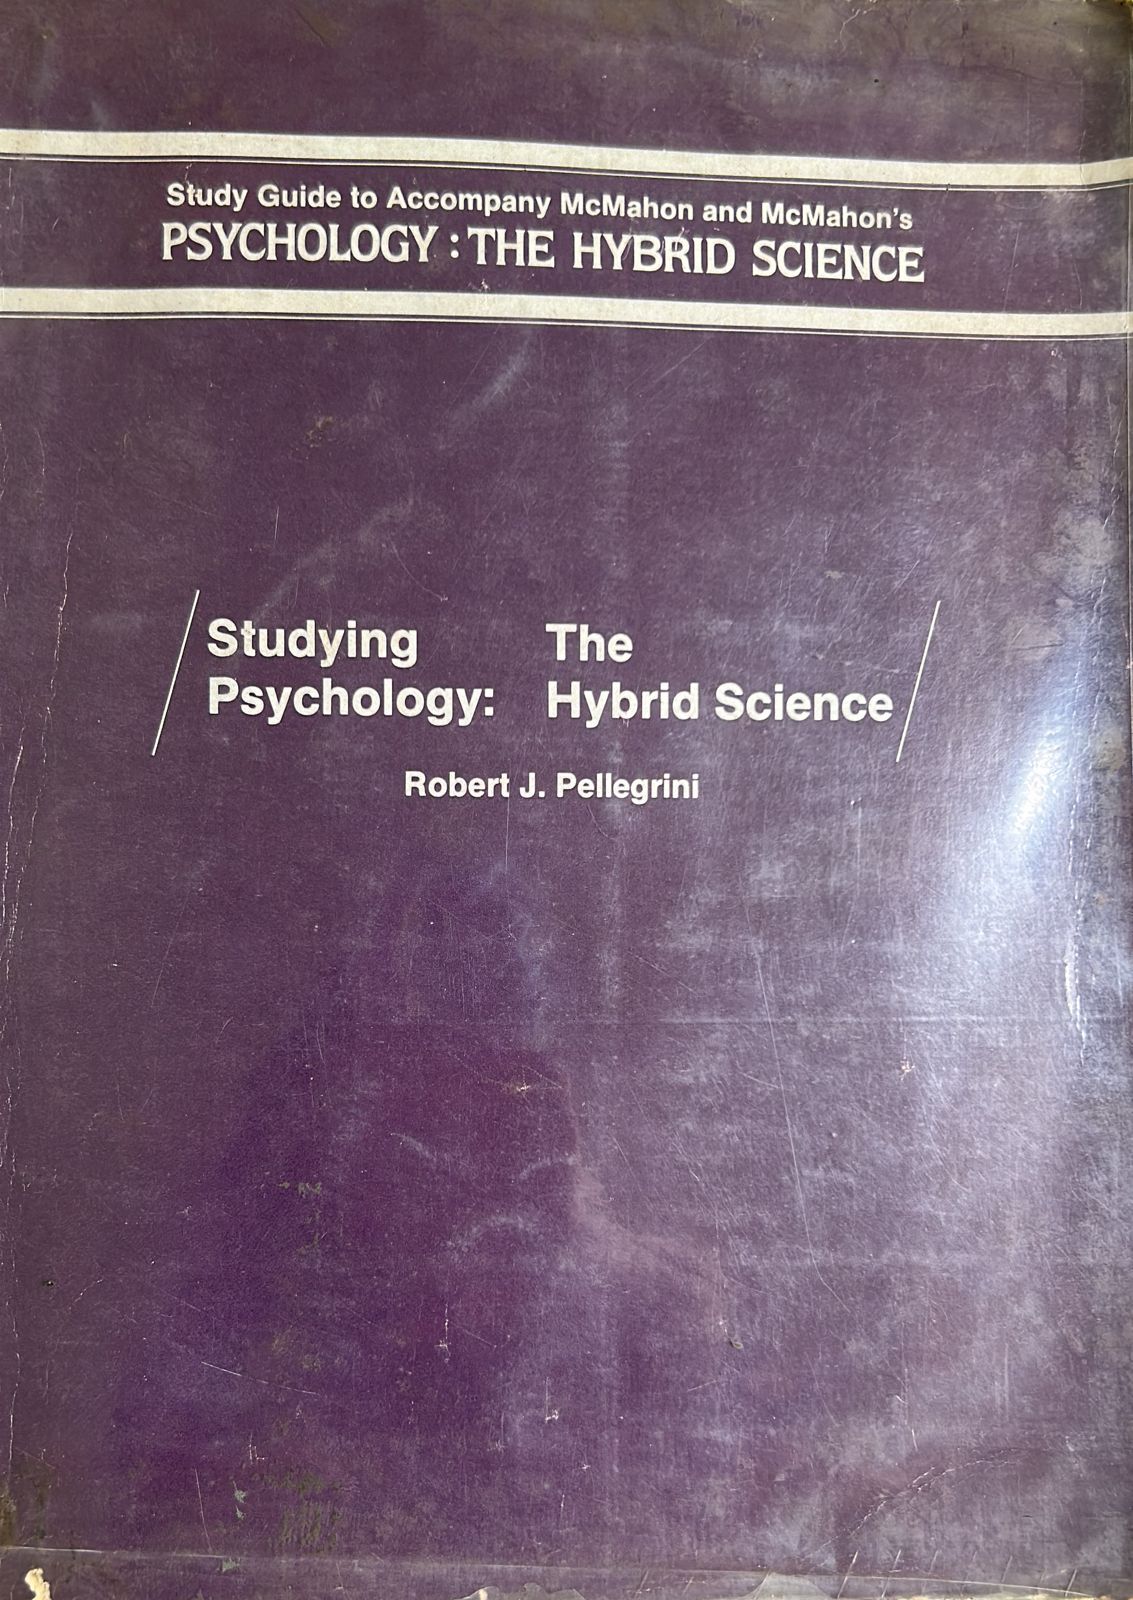 Psychology : The Hybrid Science